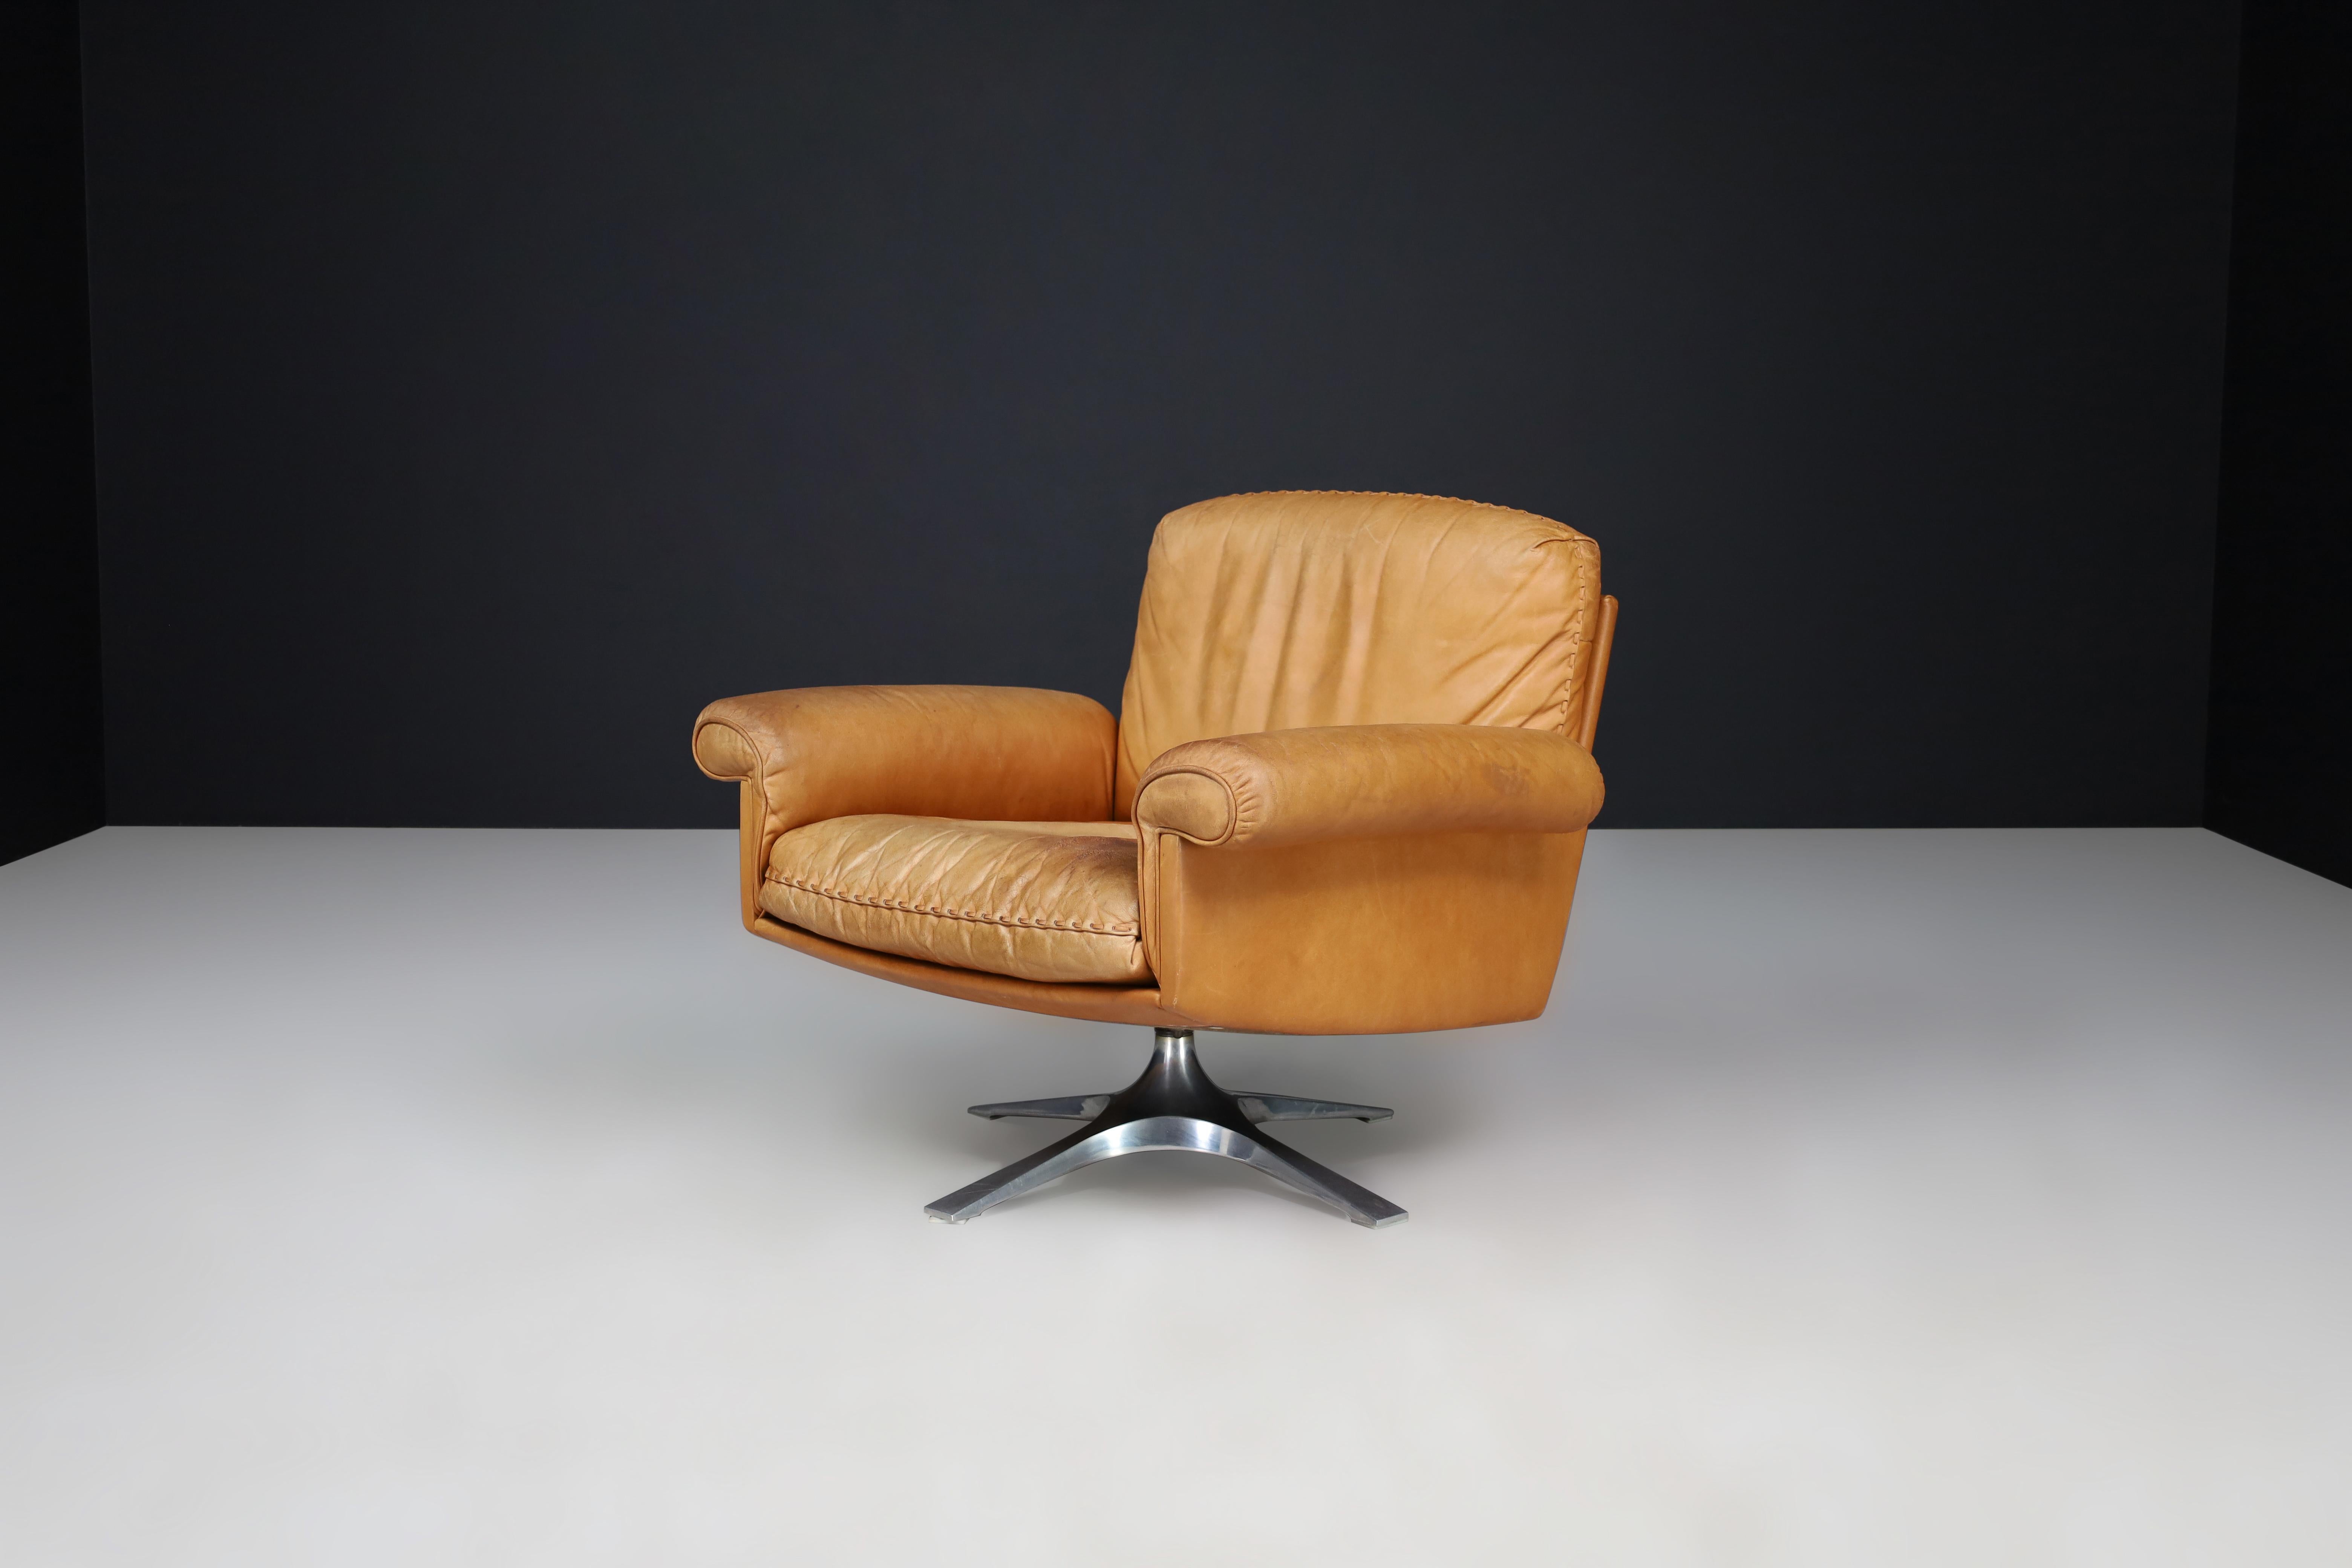 Chaise longue DS-31 de De Sede en cuir brun cognac patiné, Suisse, années 1970

La chaise longue DS-31 de De Sede est un meuble de grande qualité en cuir fin et en métal chromé. Fabriqué en Suisse dans les années 1970, son assise profonde et ses